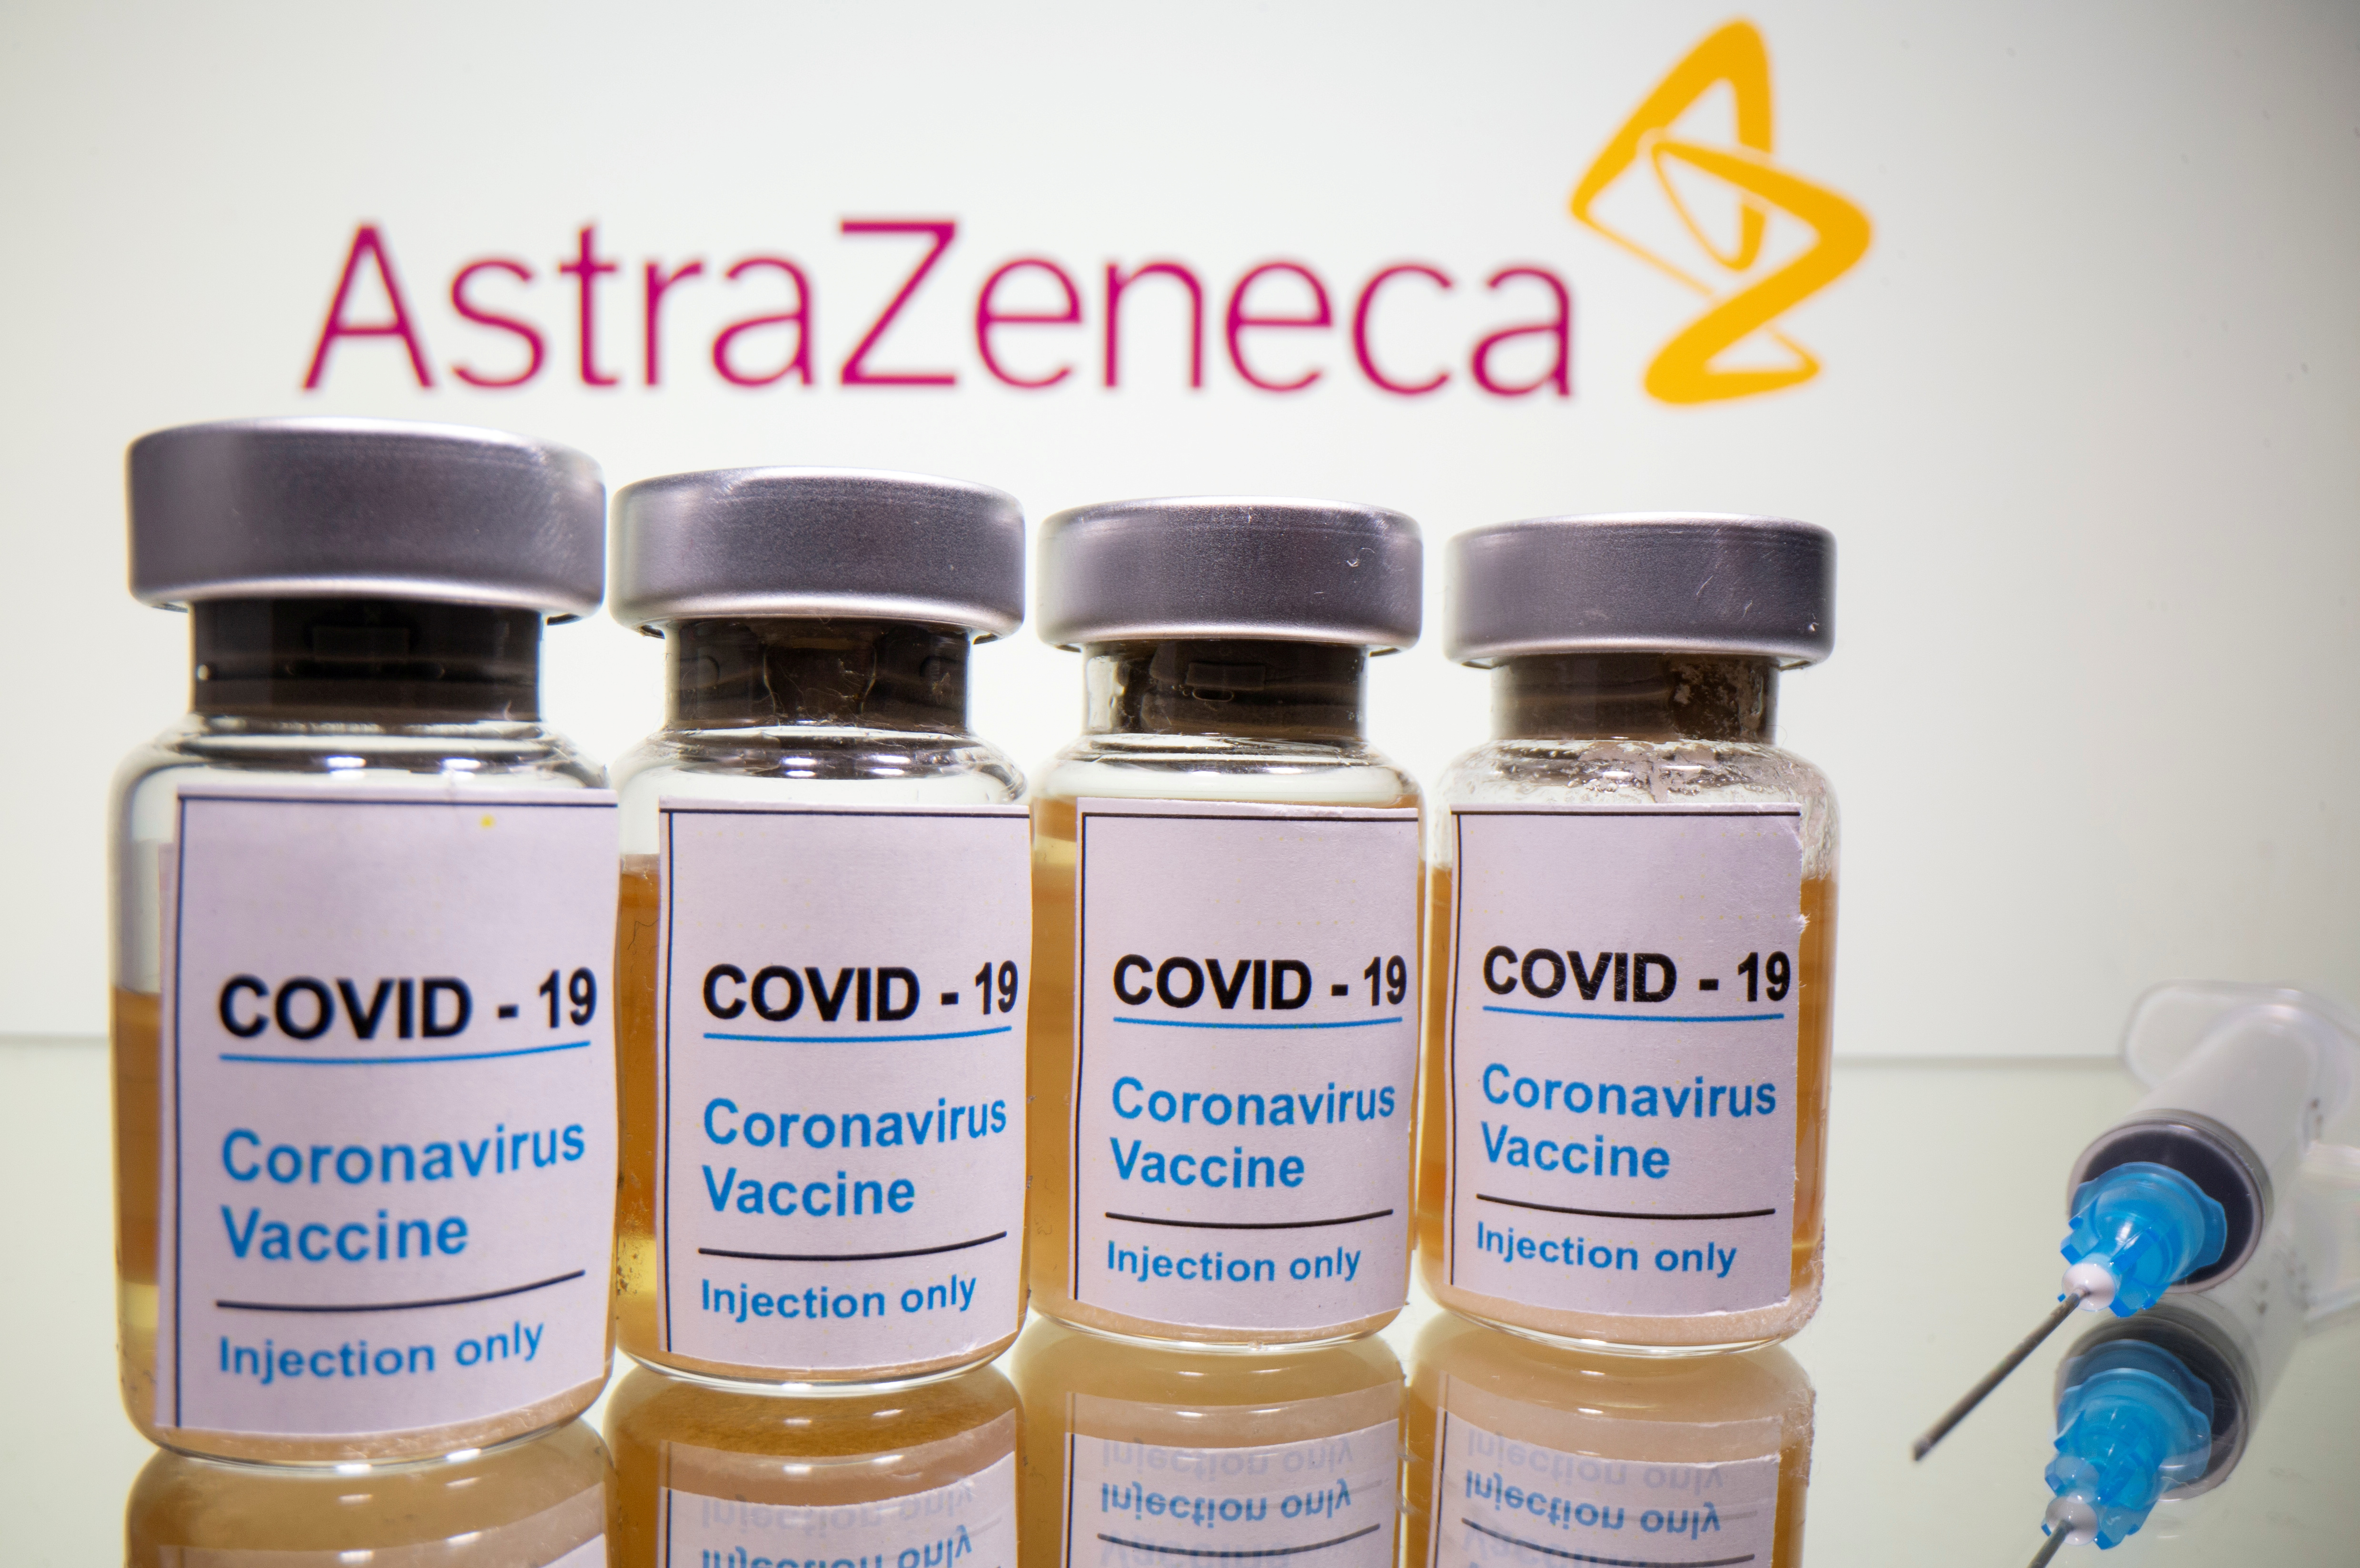 La vacuna Covid-19 de AstraZeneca tiene una eficacia de 70%